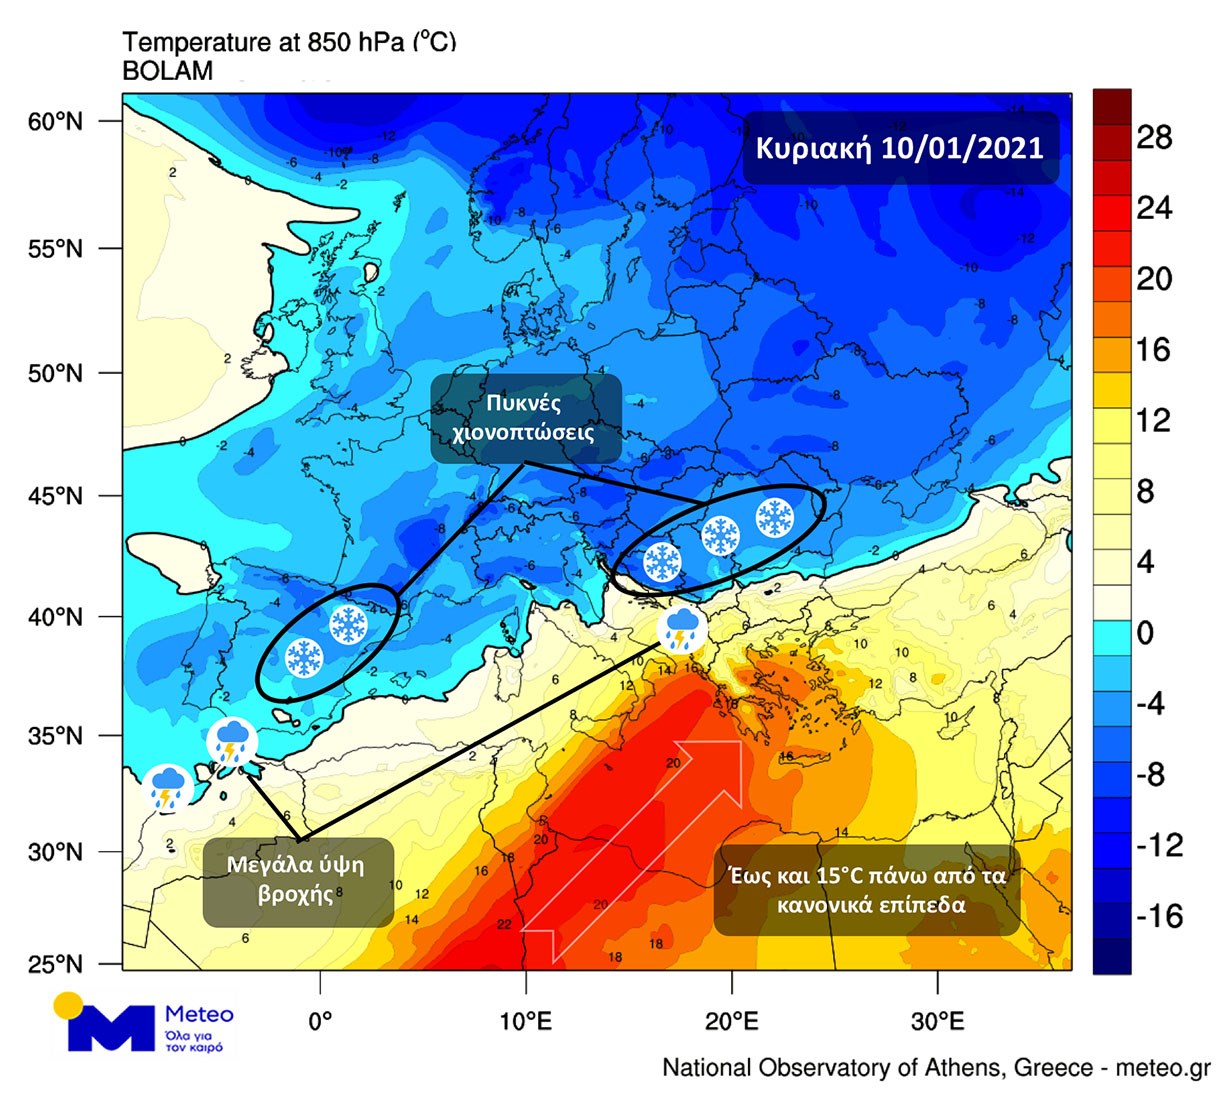 Ο καιρός “τρελάθηκε” στην Ευρώπη: Θερμή “εισβολή” στην Ελλάδα, χιόνια στην Ιβηρική Χερσόνησο